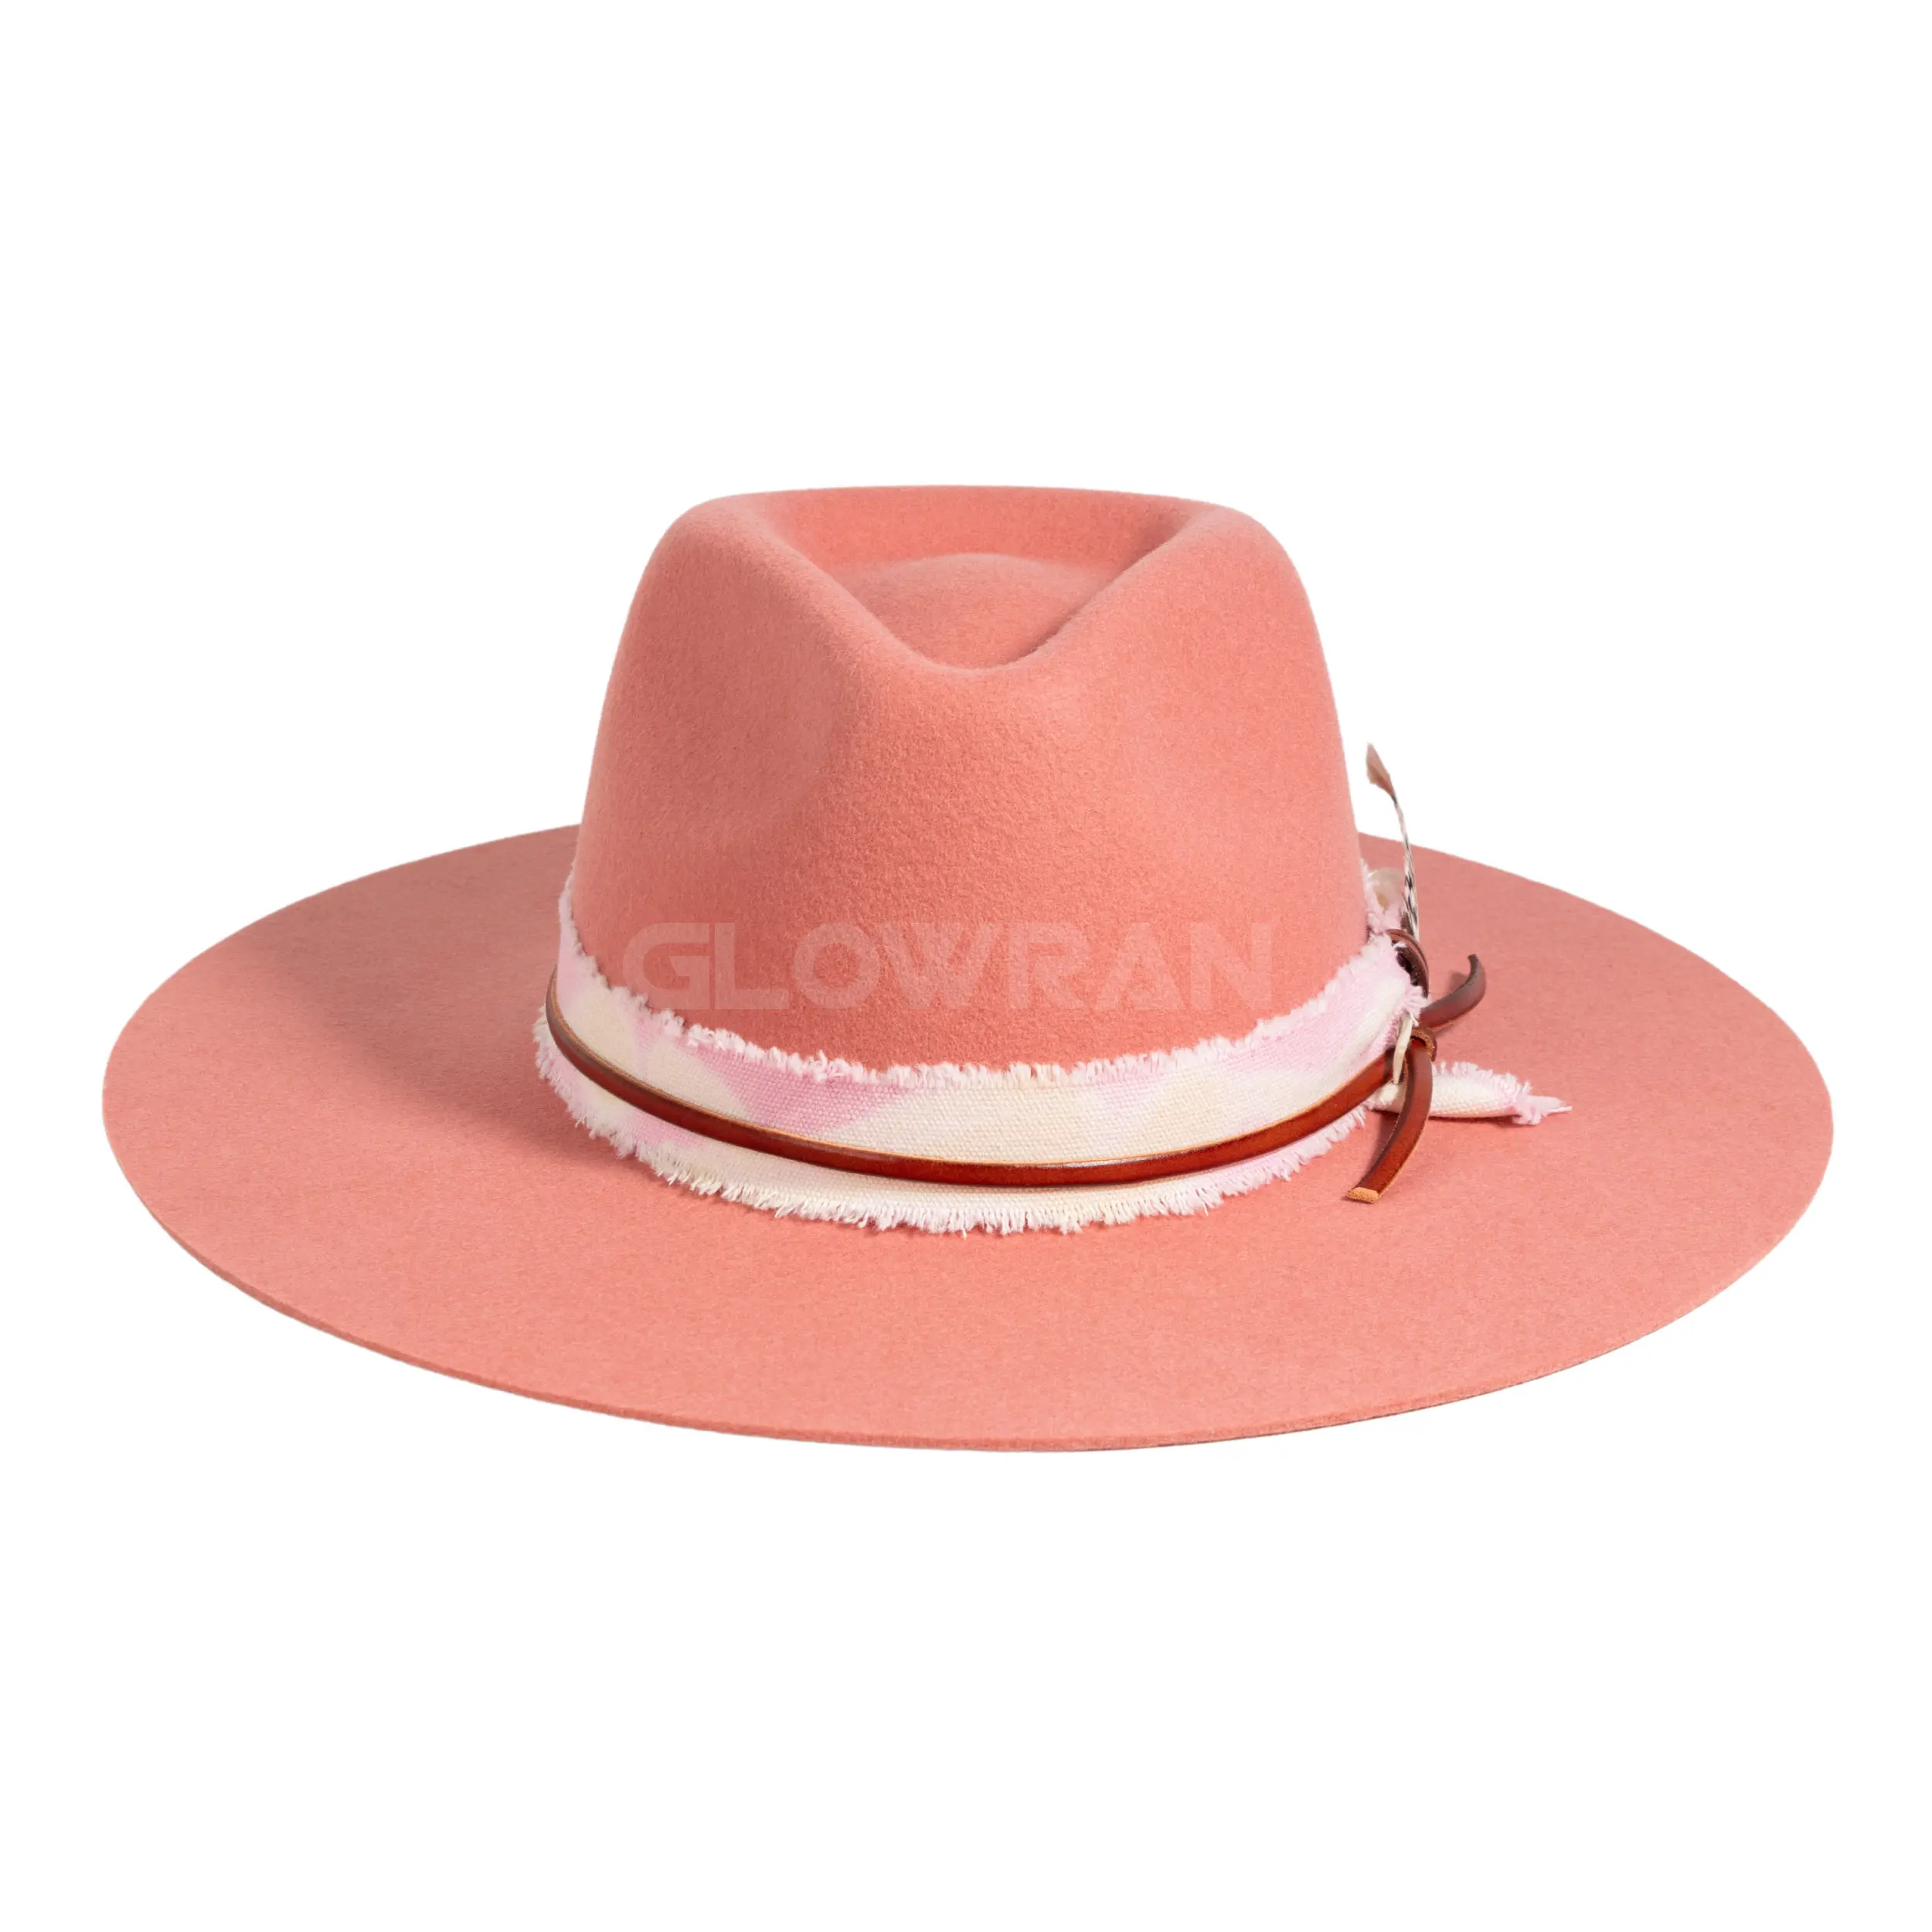 כובעי פדורה לבד נוצות ורודות באיכות גבוהה עשויים מצמר אוסטרלי טהור לנשים